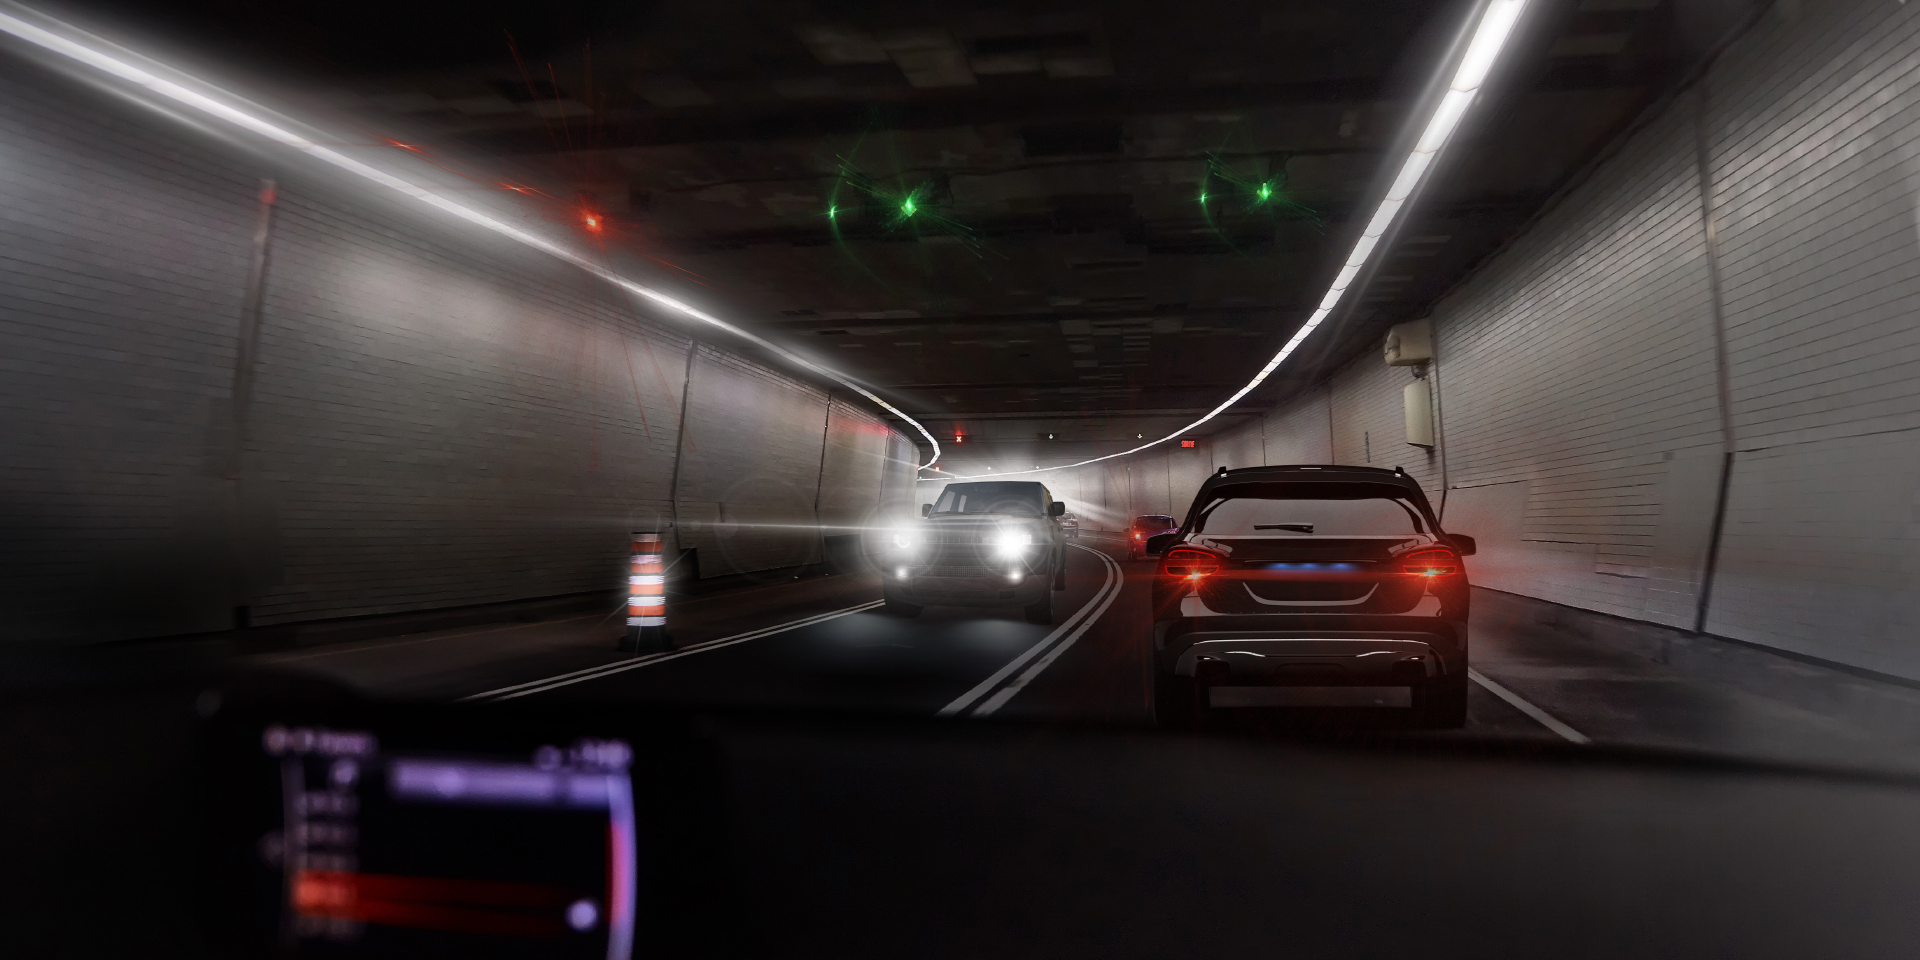 Zwei Bilder aus der Perspektive eines Autofahrers in einem Tunnel mit durchfahrendem Verkehr. Ein Bild zeigt die Blendung durch ein Auto und die Tunnelbeleuchtung, das andere Bild zeigt deutlich weniger Blendung.